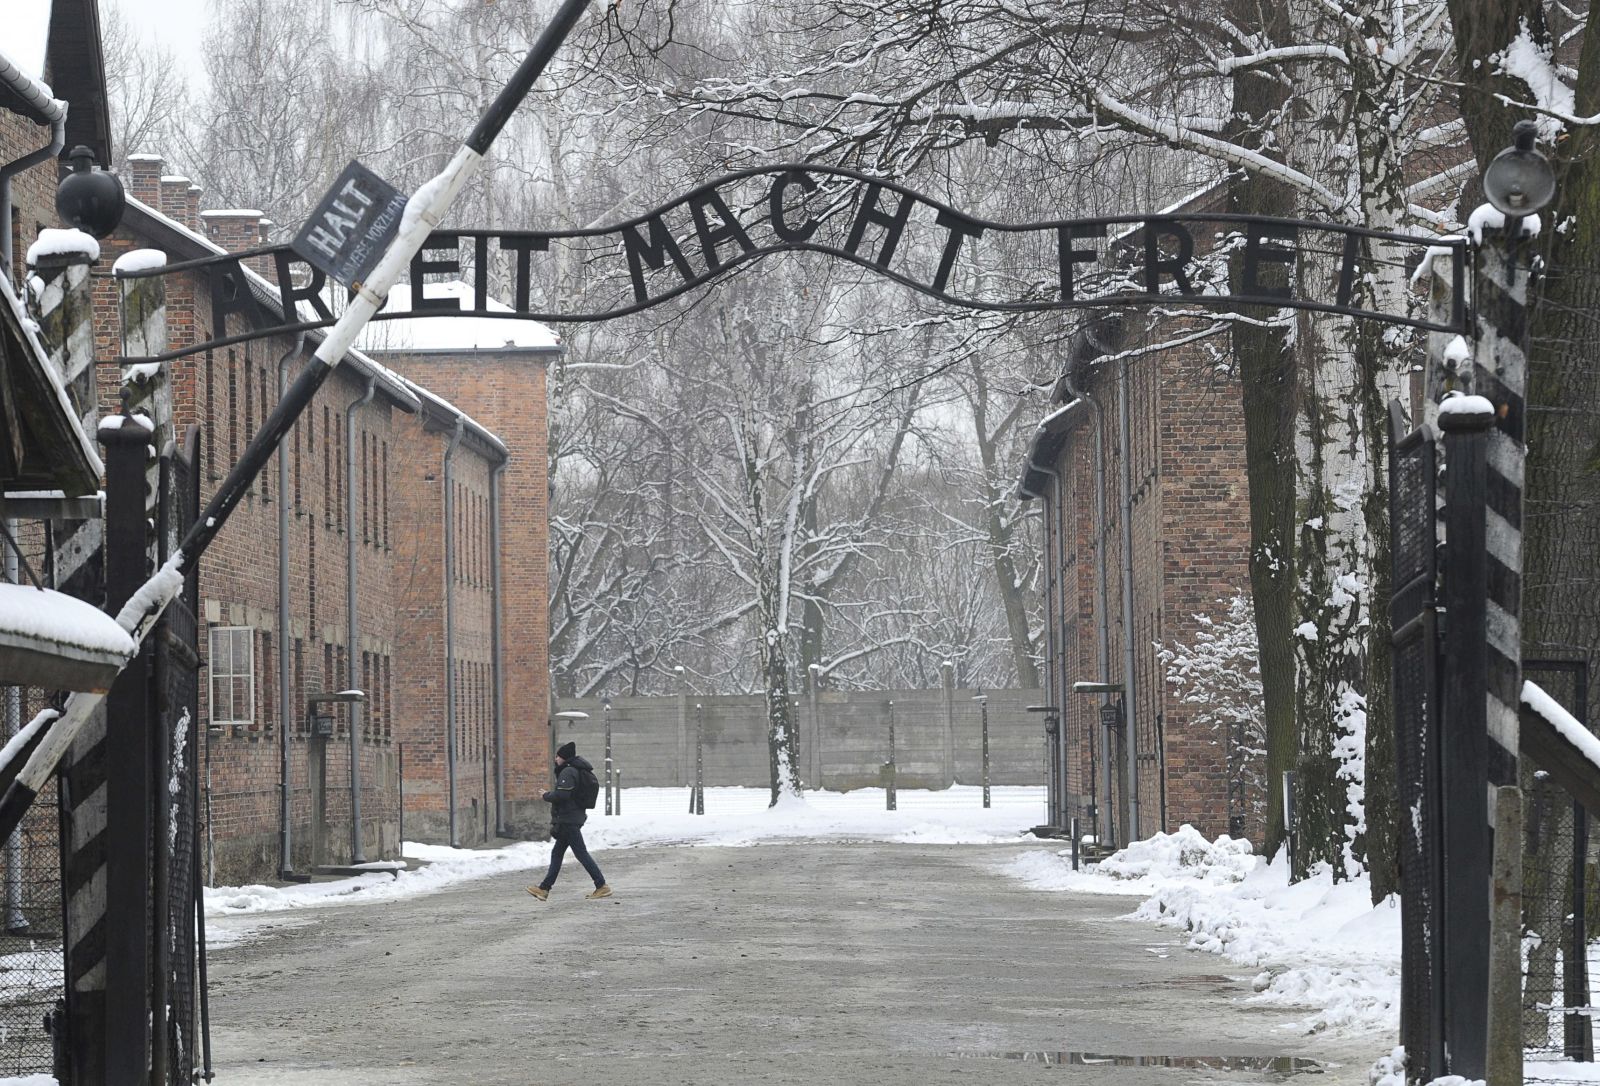 Svet si dnes pripomína 75 rokov od oslobodenia koncentračného tábora v Osvienčime